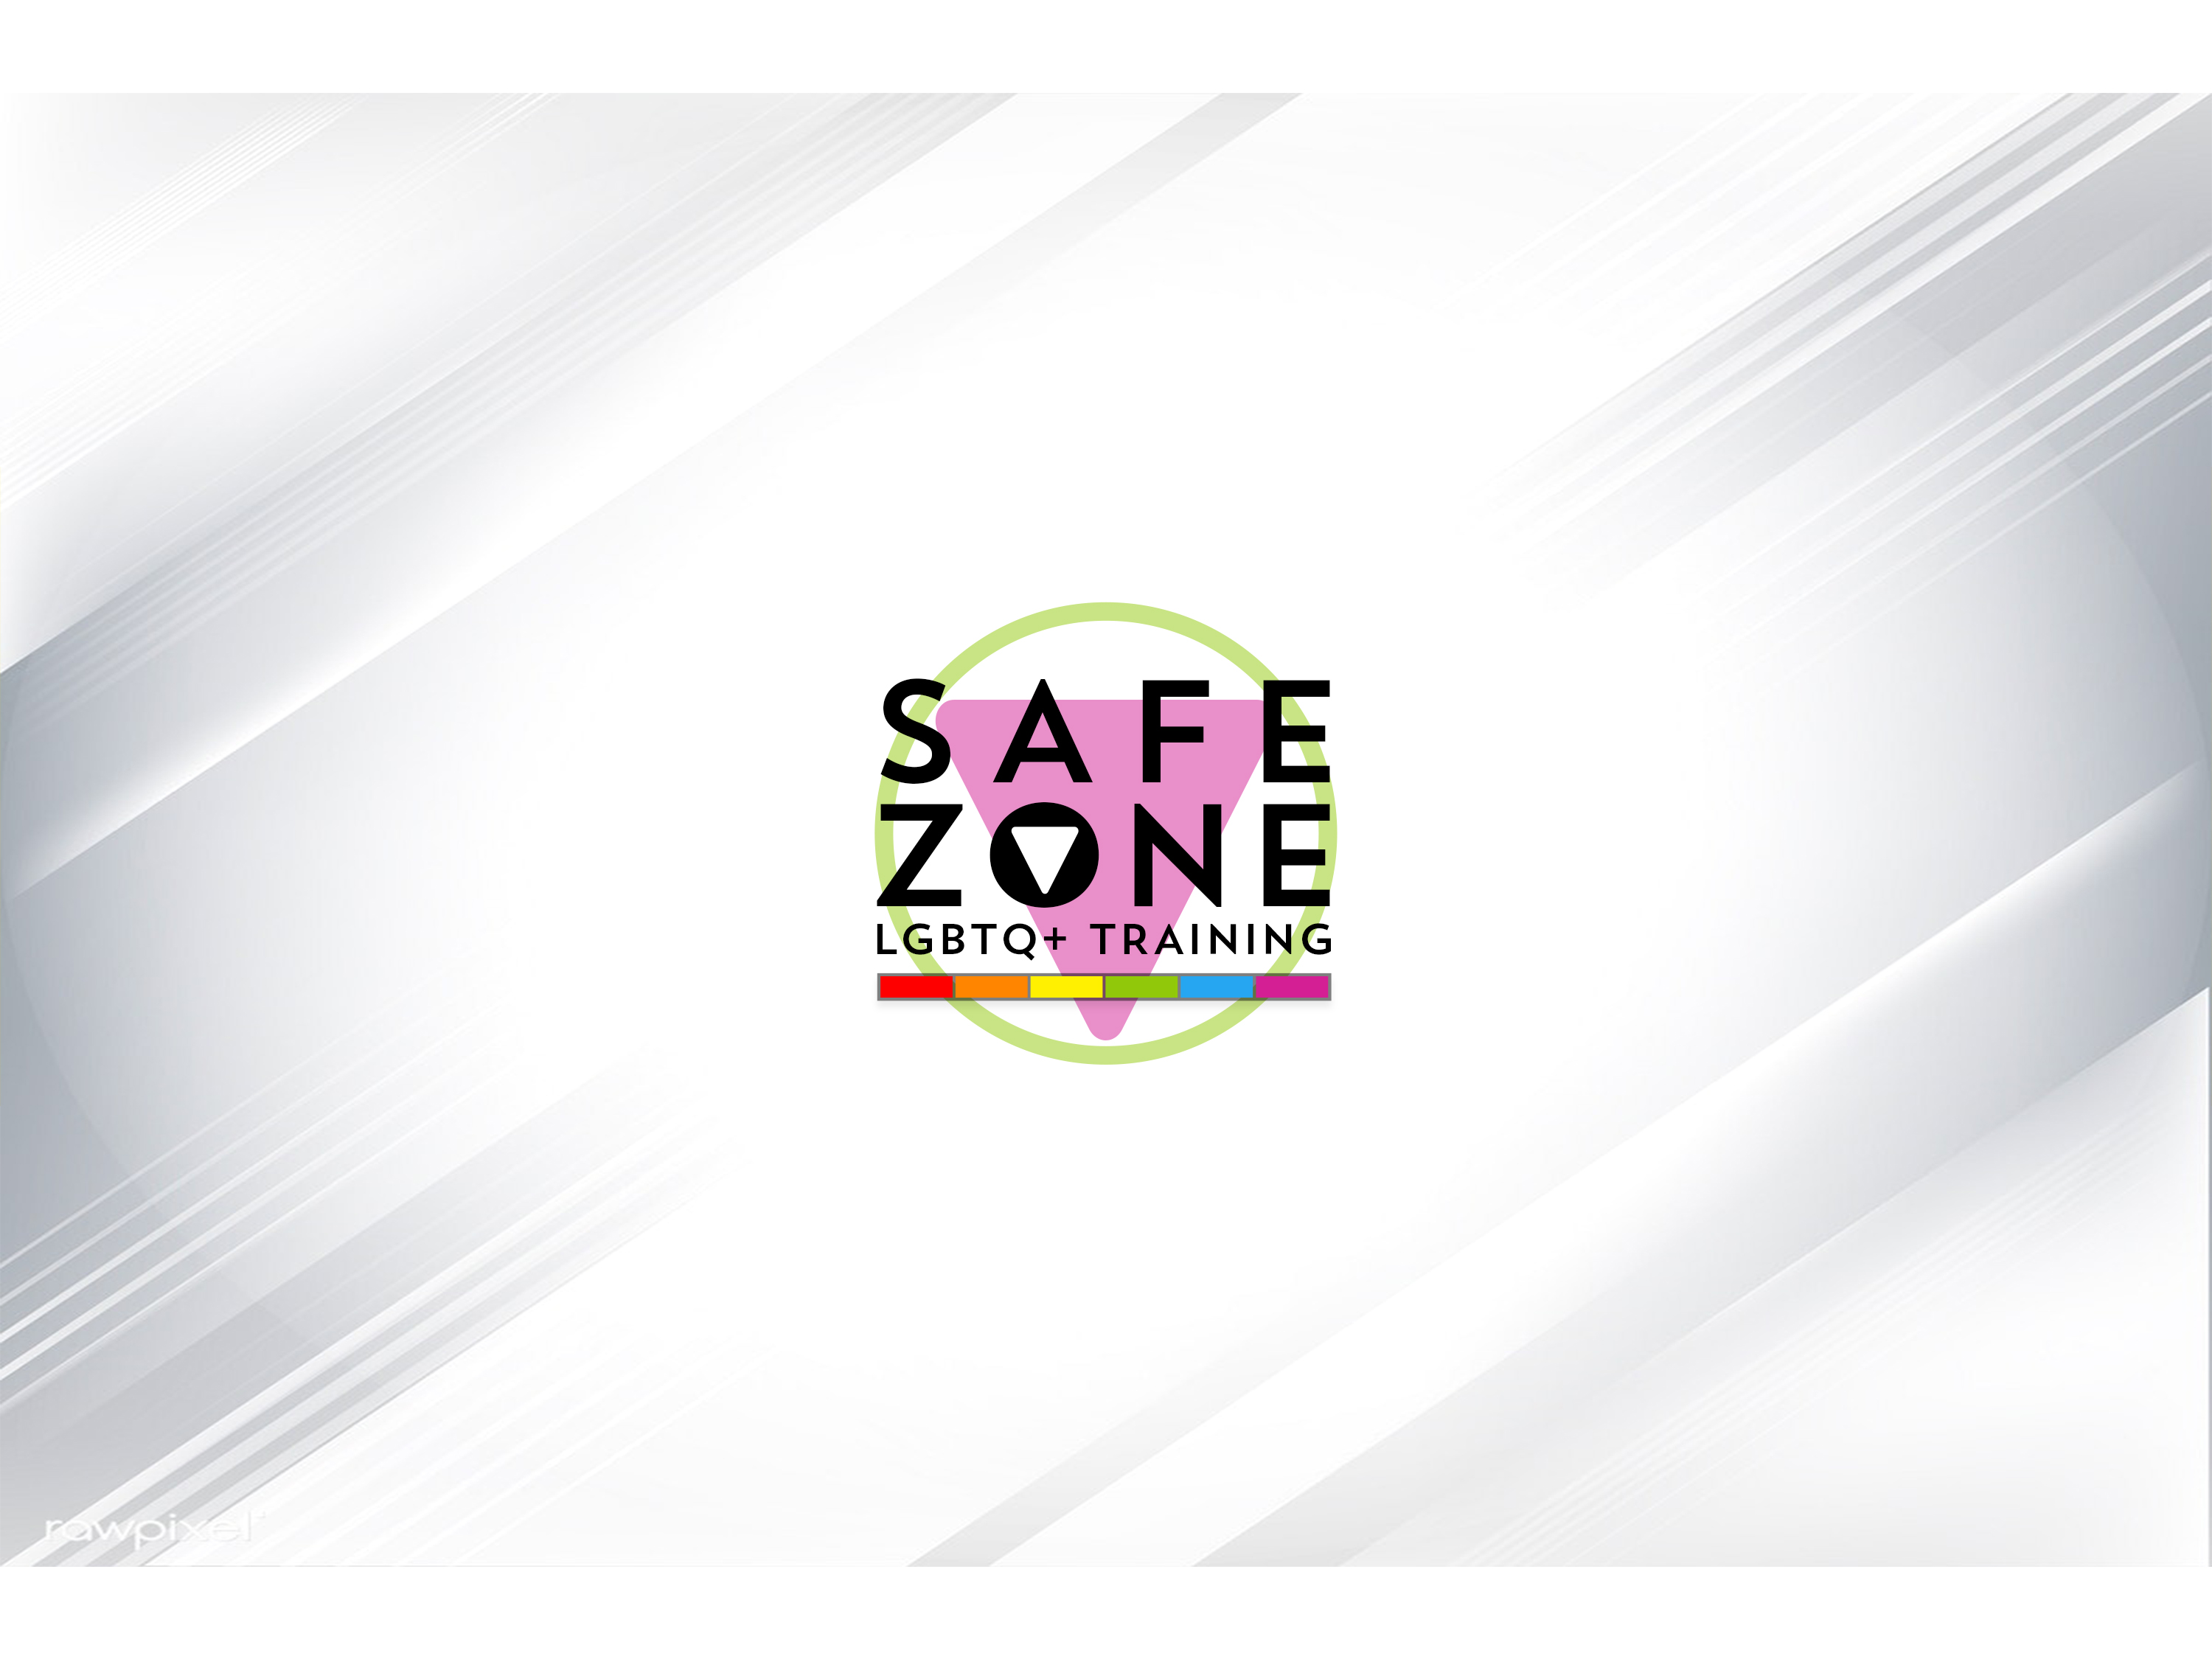 Safe Zone LGBTQ+ Training